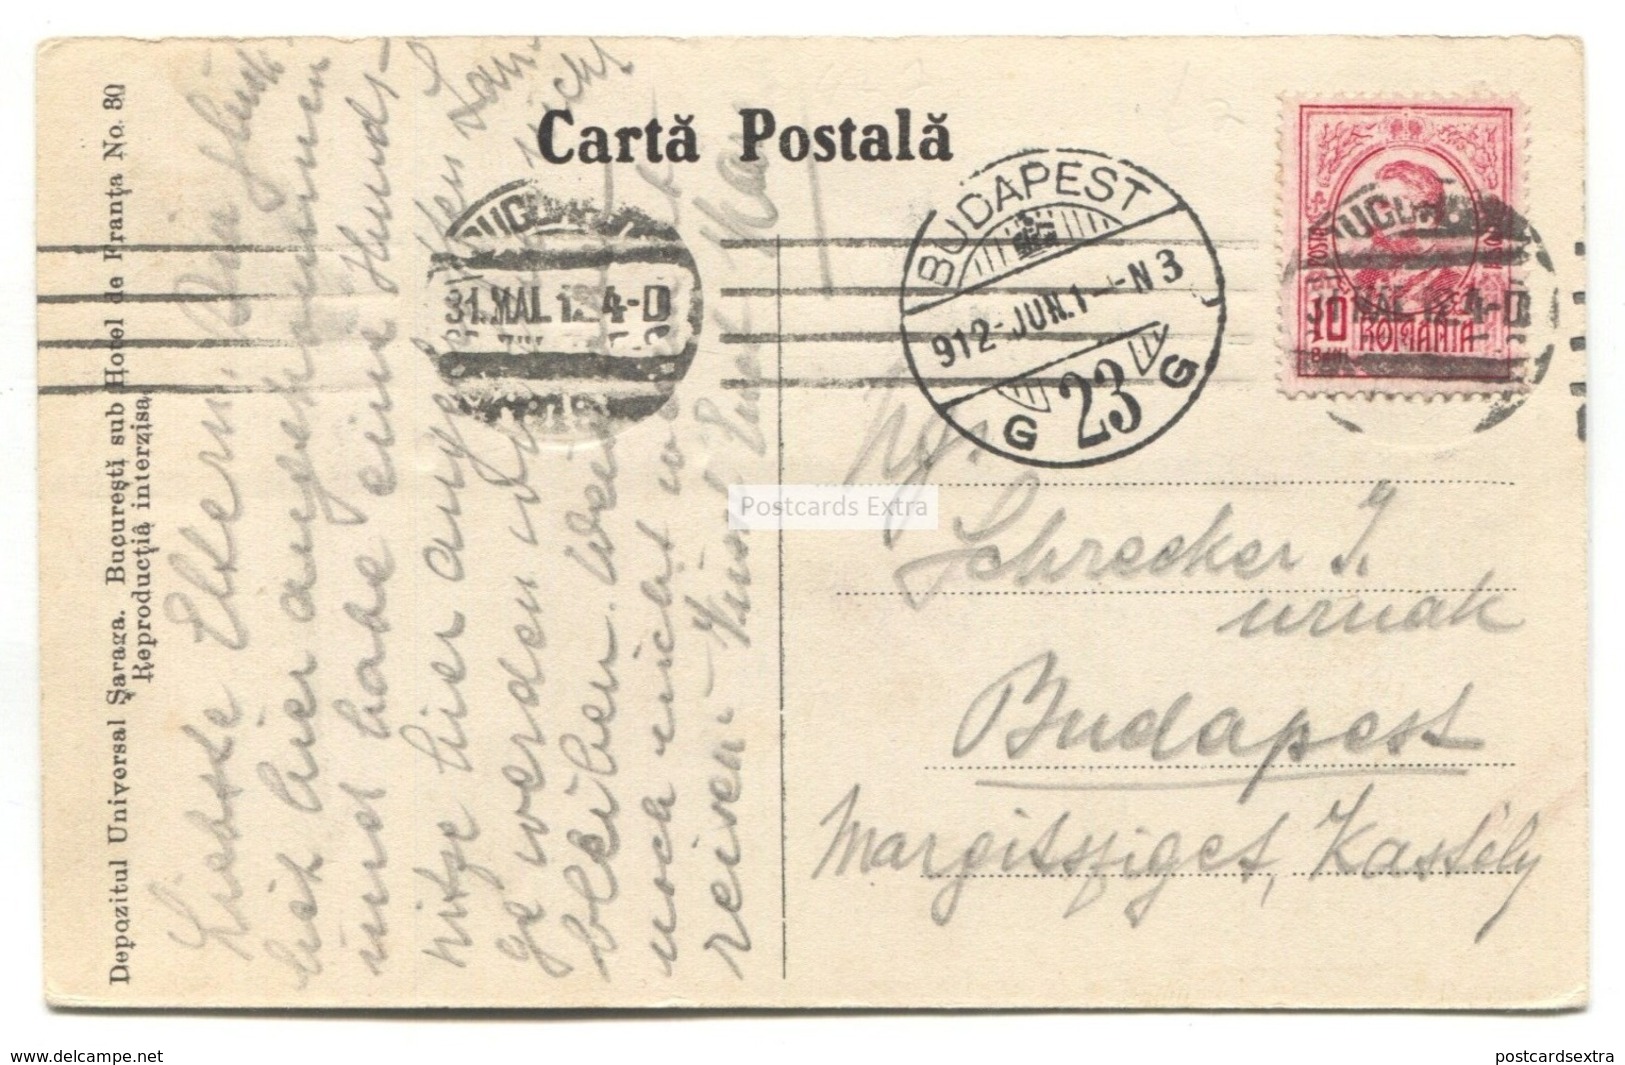 Bucuresti, Bucharest - Camera Deputatilor, Parliament - 1912 Used Romania Postcard - Romania